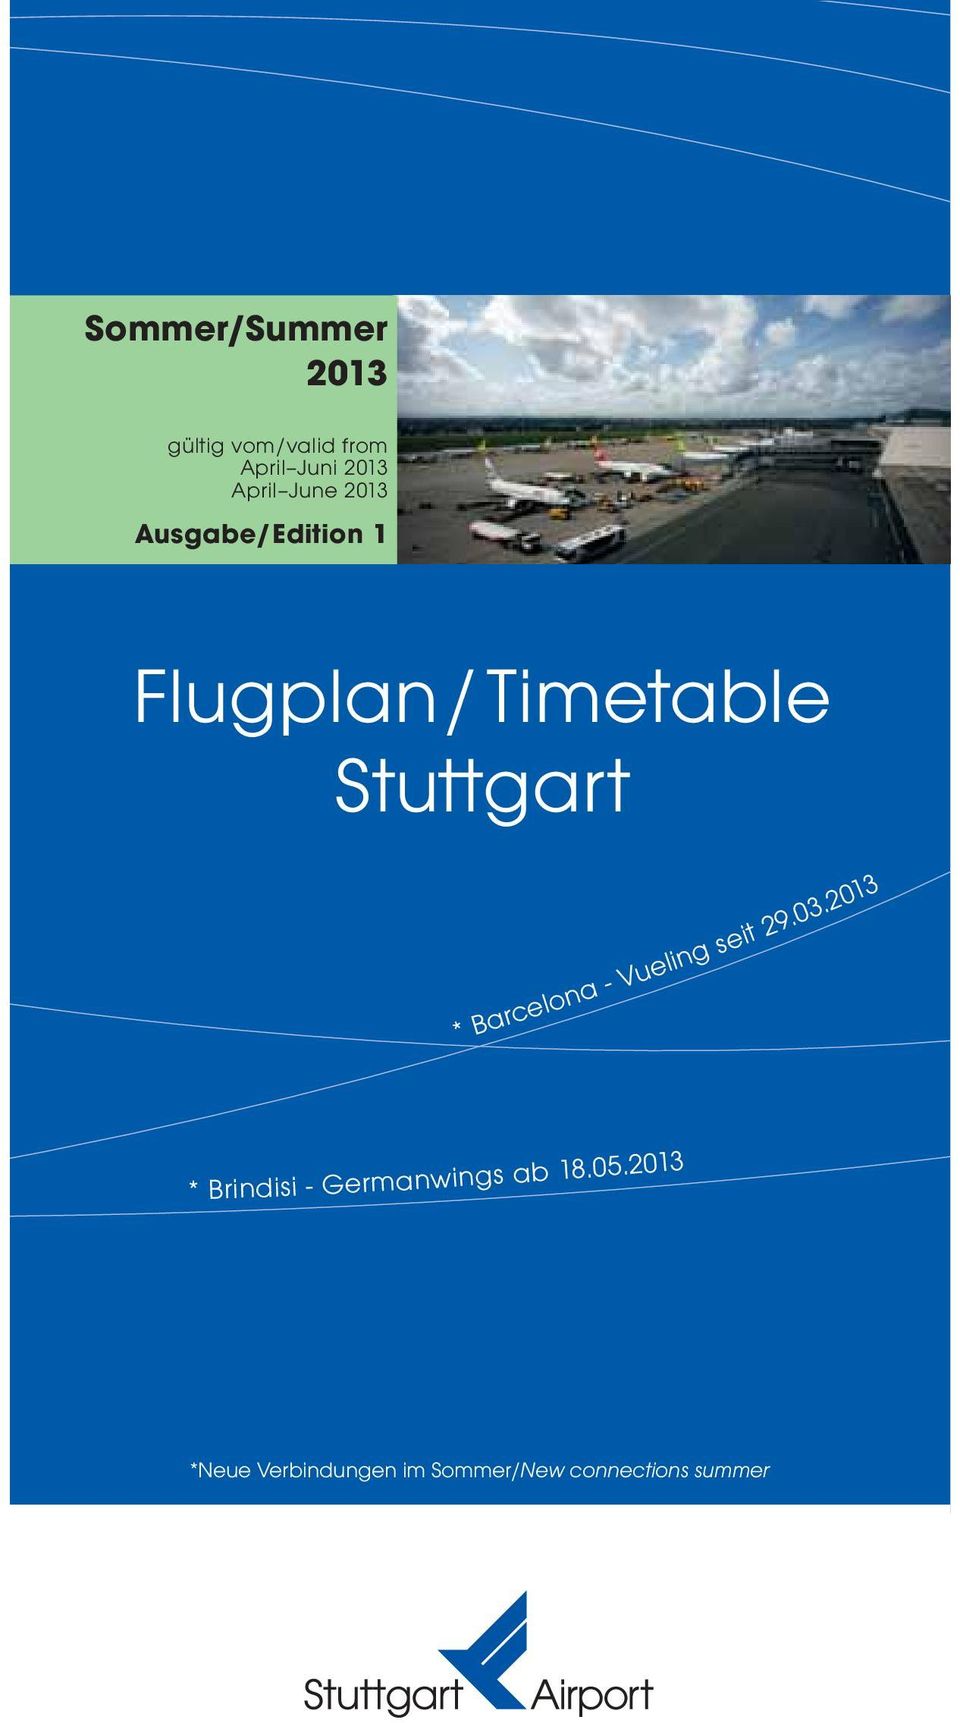 Stuttgart * Barcelona - Vueling seit 29.03.